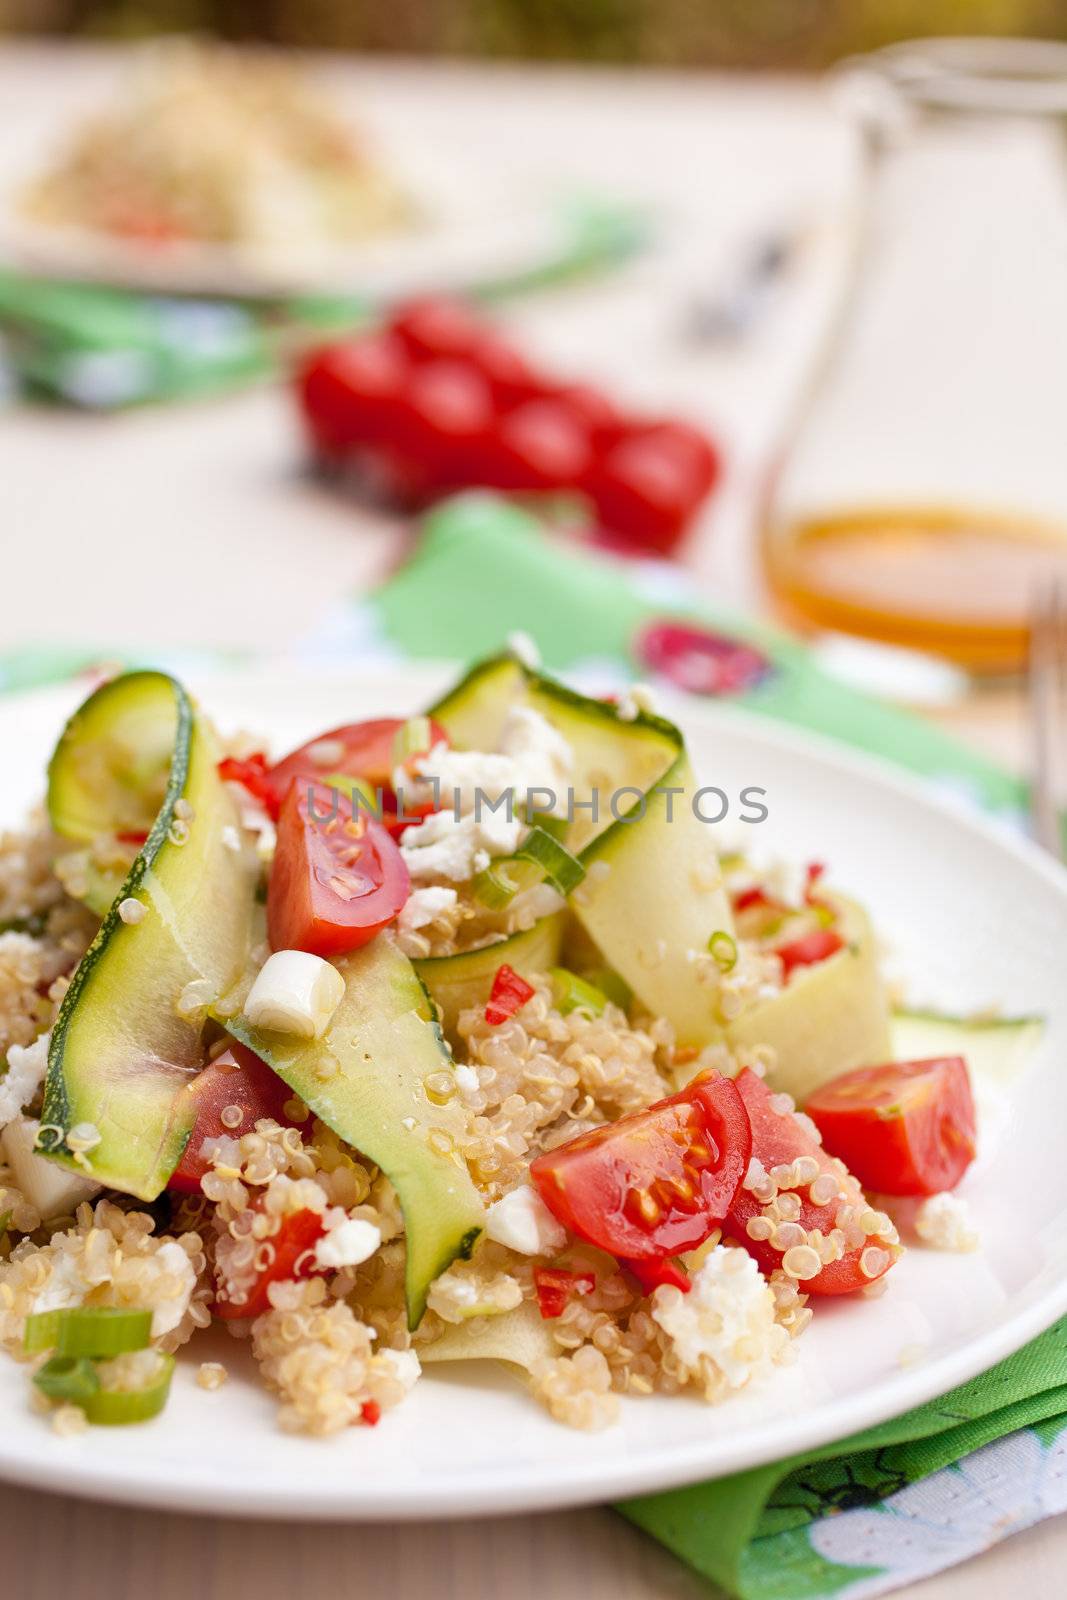 Healthy quinoa salad by Fotosmurf